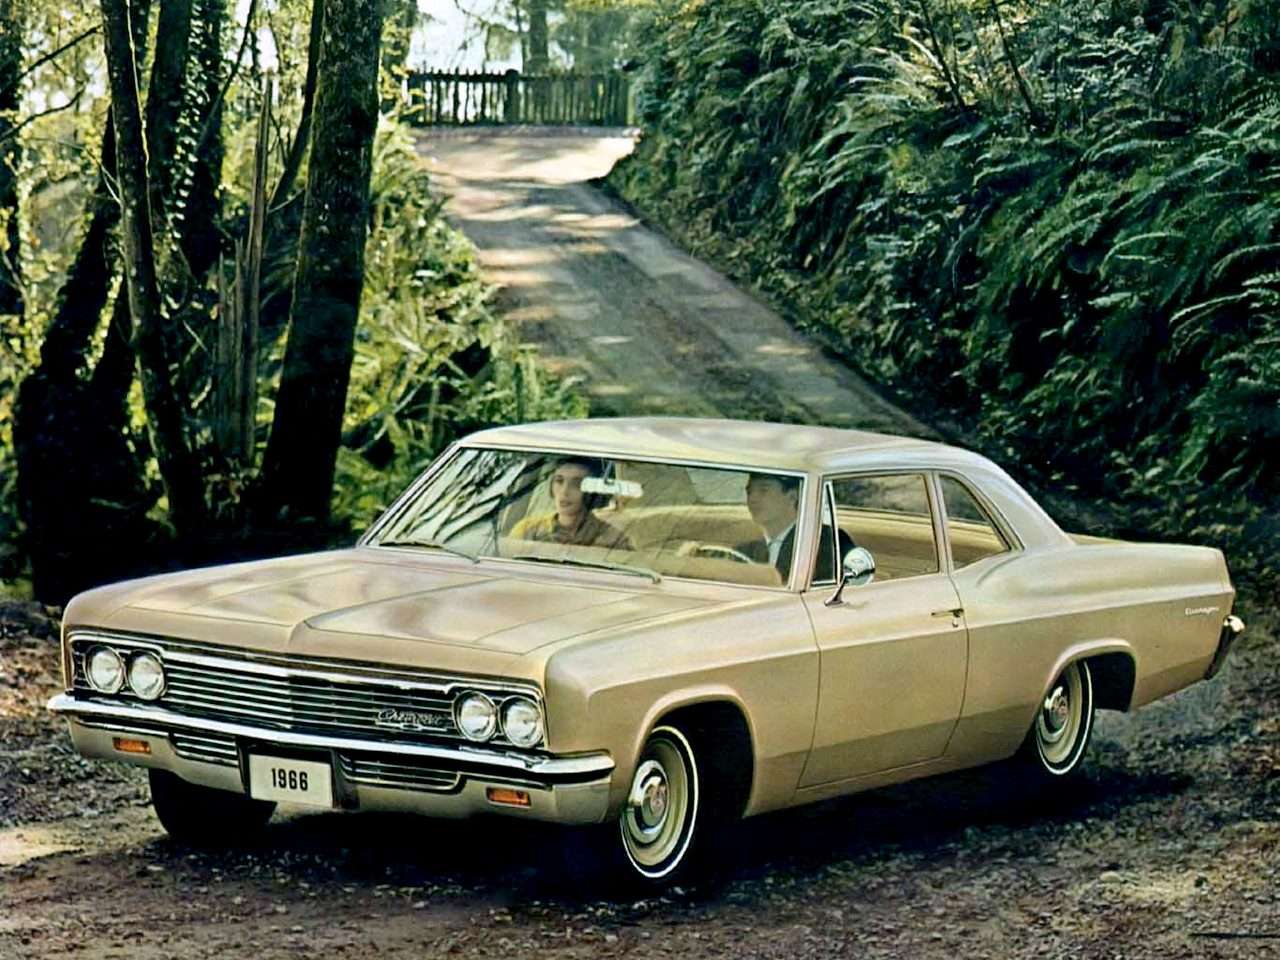 1966 Chevrolet Biscayne Sedán de 2 puertas rompecabezas en línea